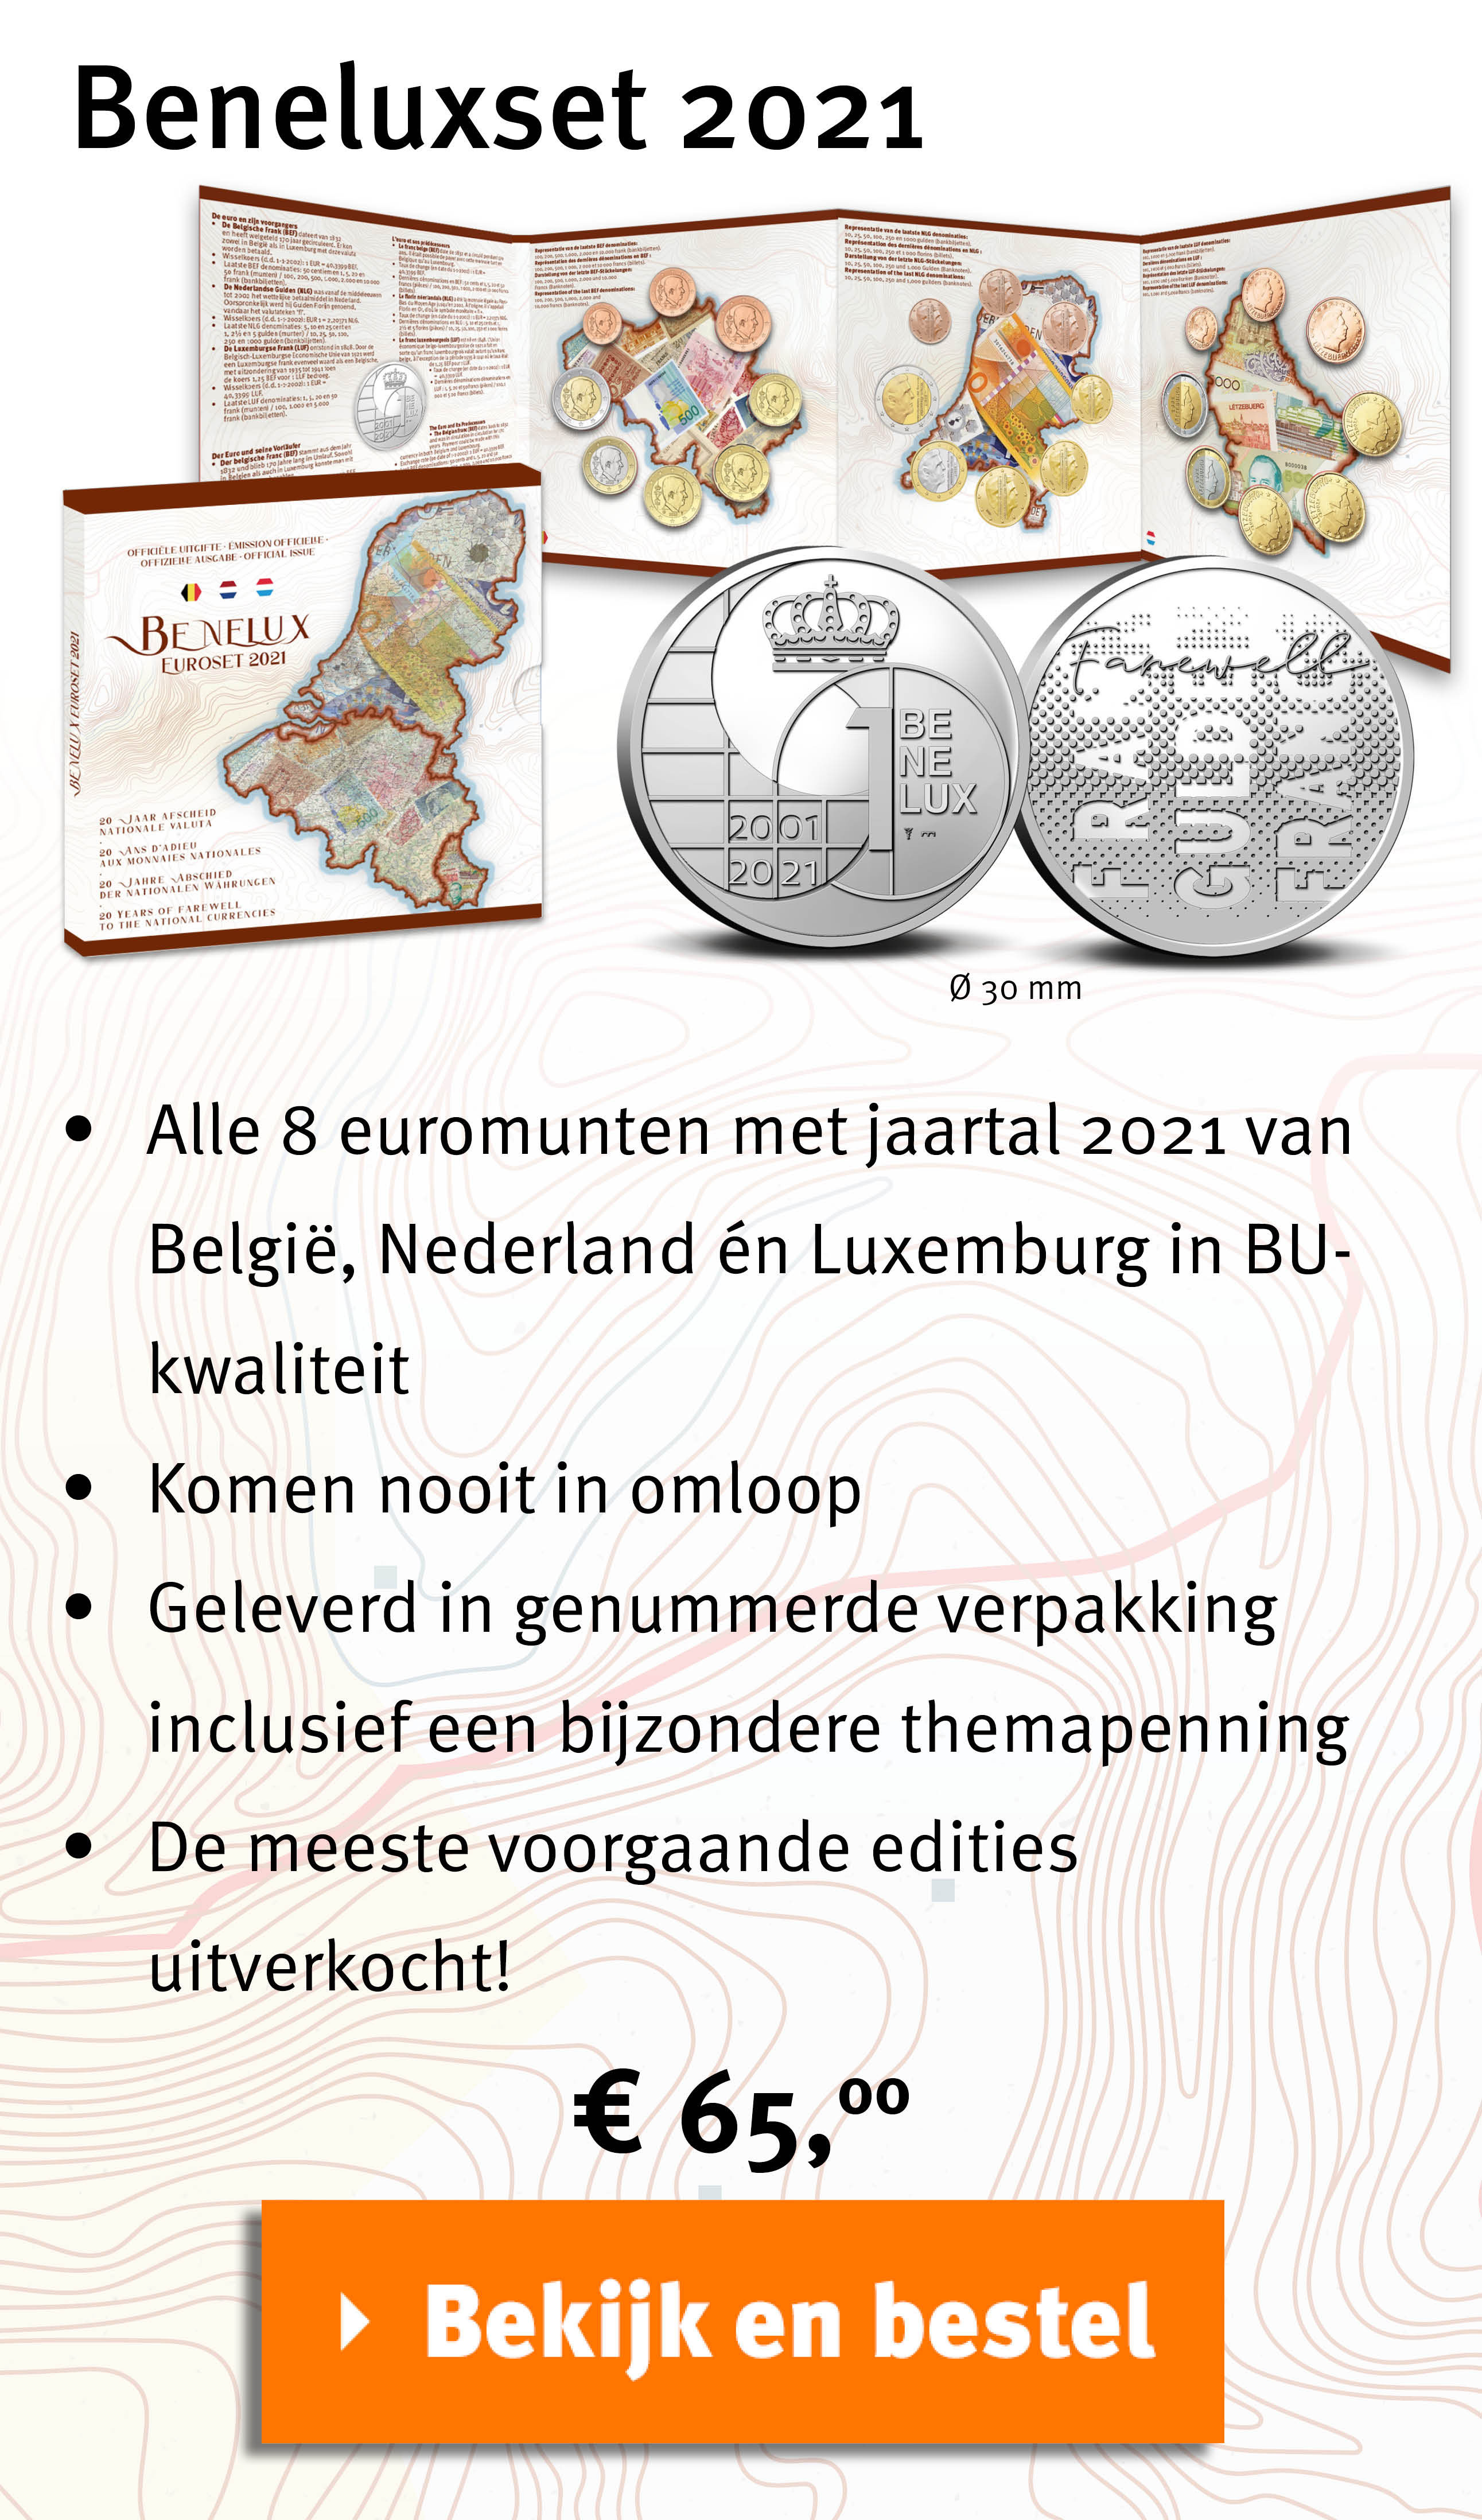 Bekijk en bestel: Beneluxset 2021